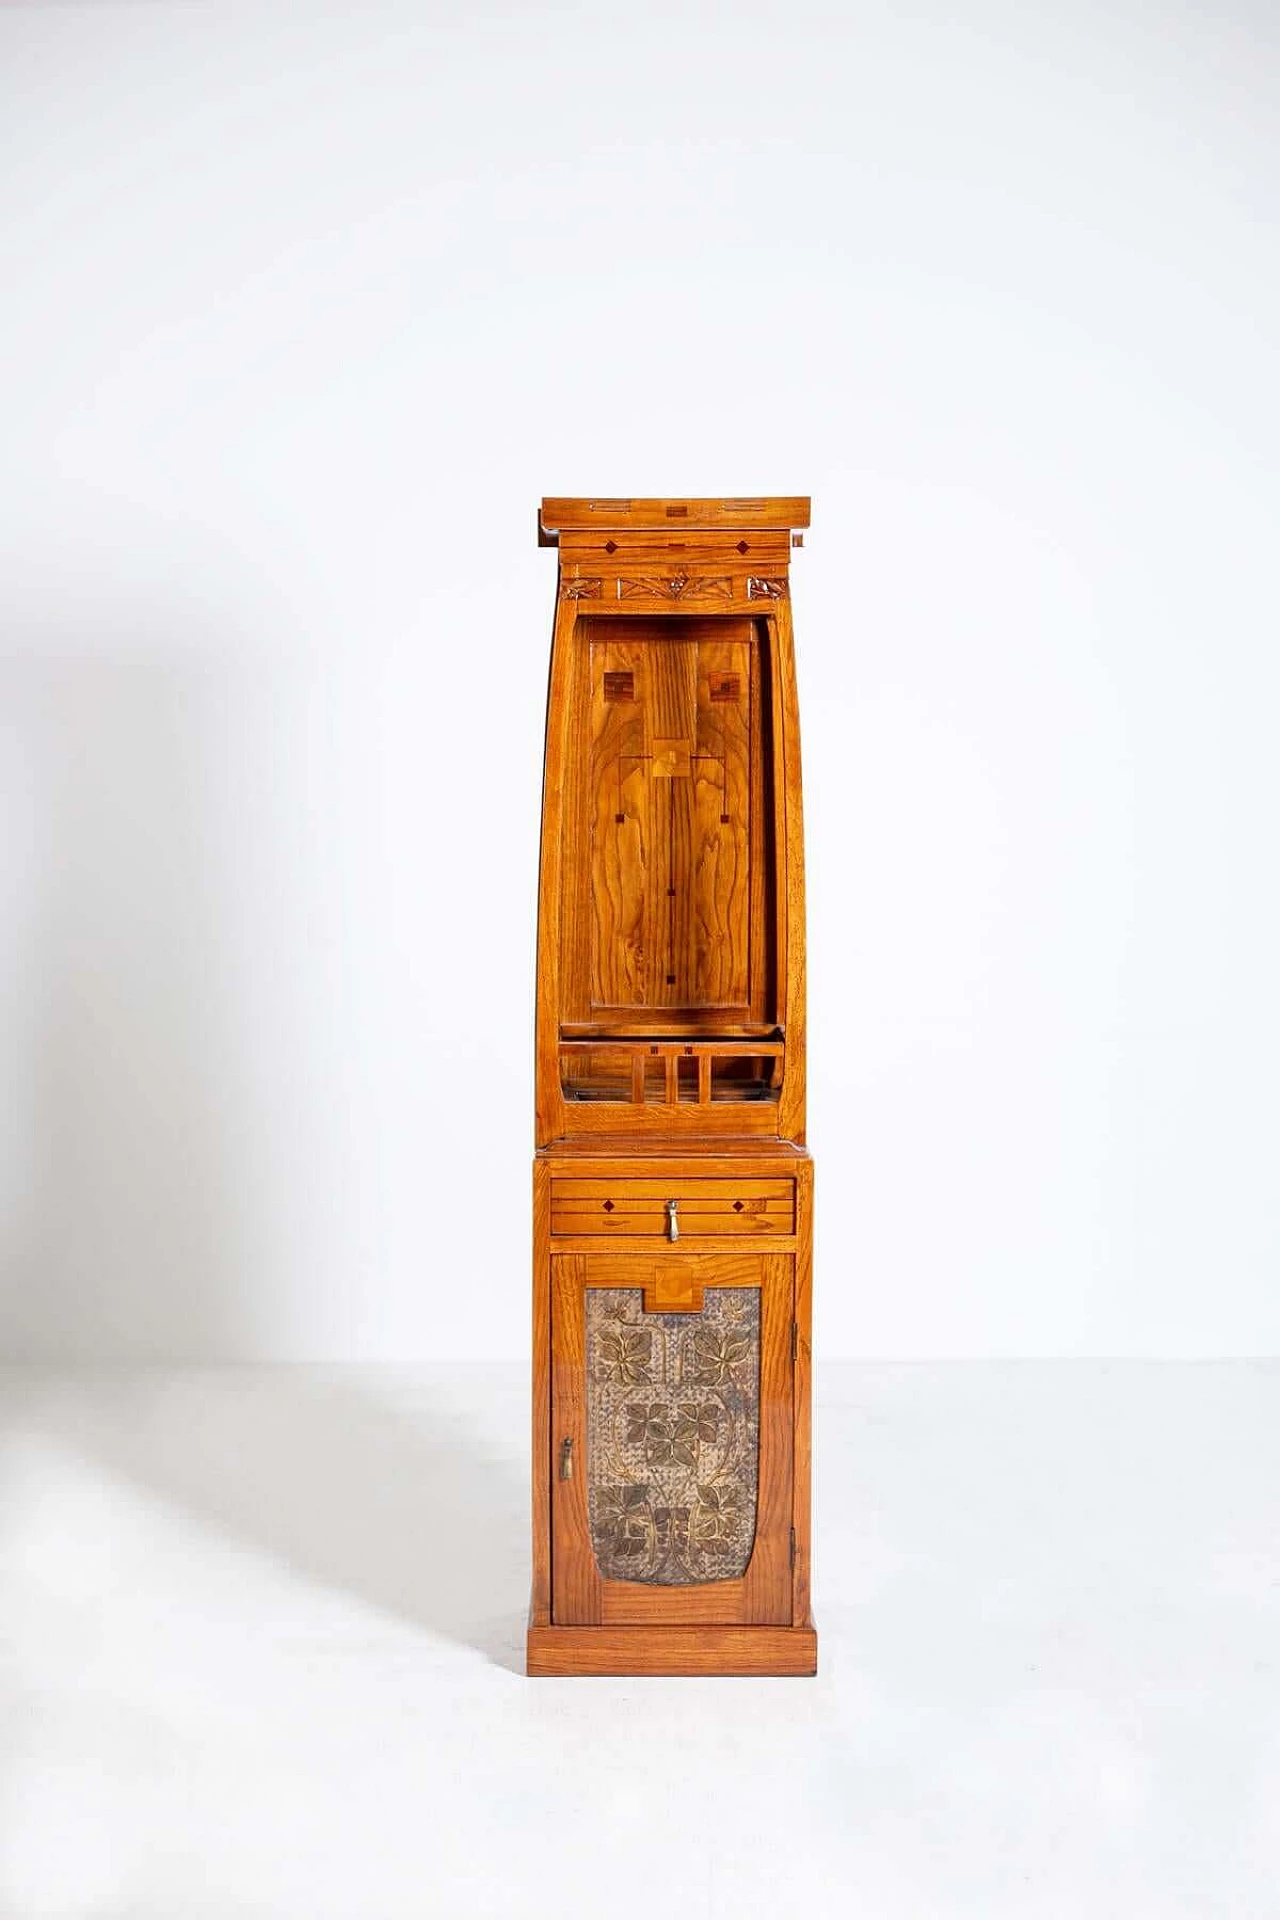 Mobile armadio in legno intagliato in stile Art Nouveau, del '900 1403423